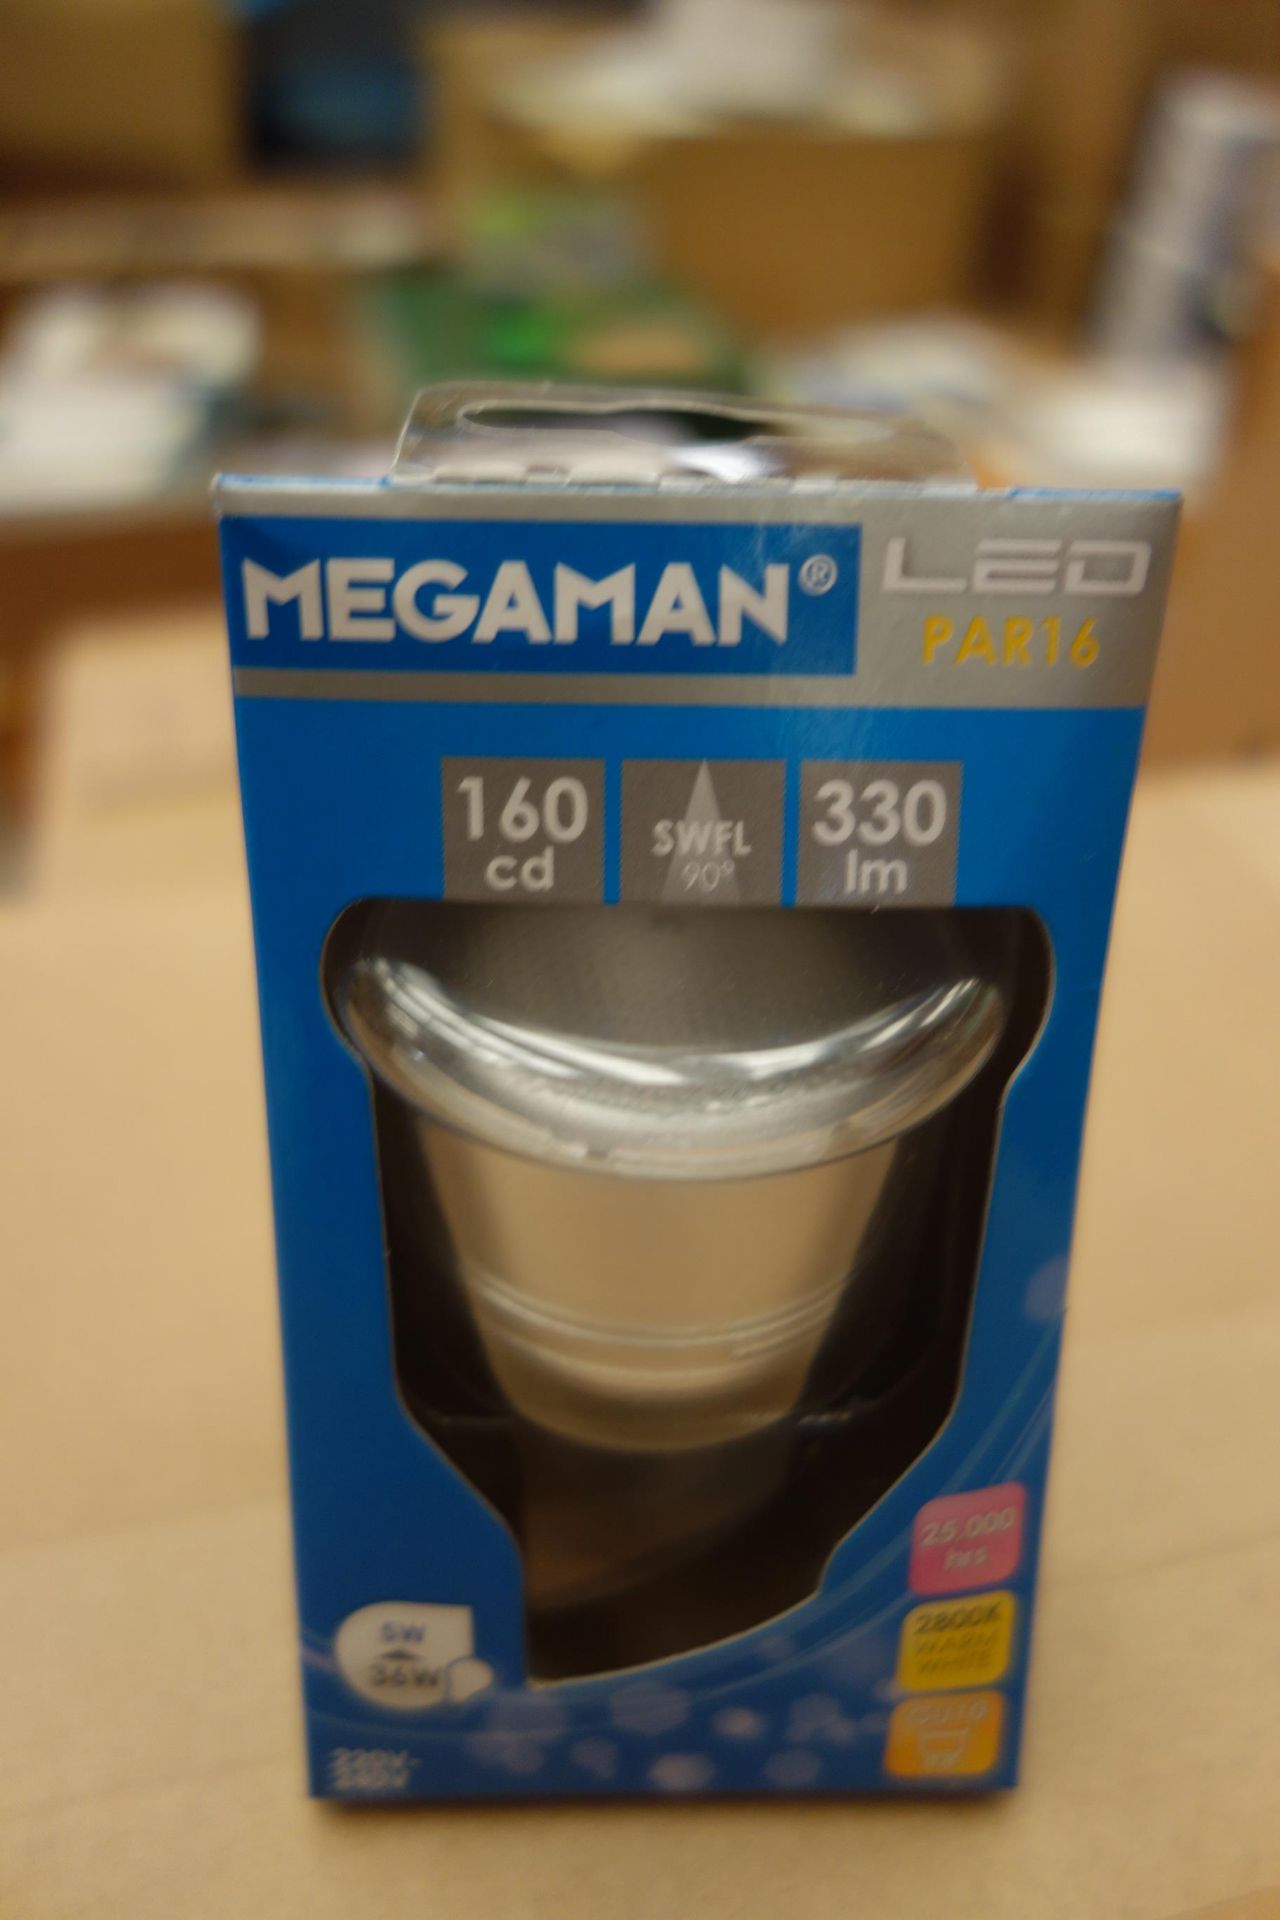 100x MEGAMAN MM06933 5W LED GU10 Lamps. Par 16 330 Lumen SWFL 90? 160CD